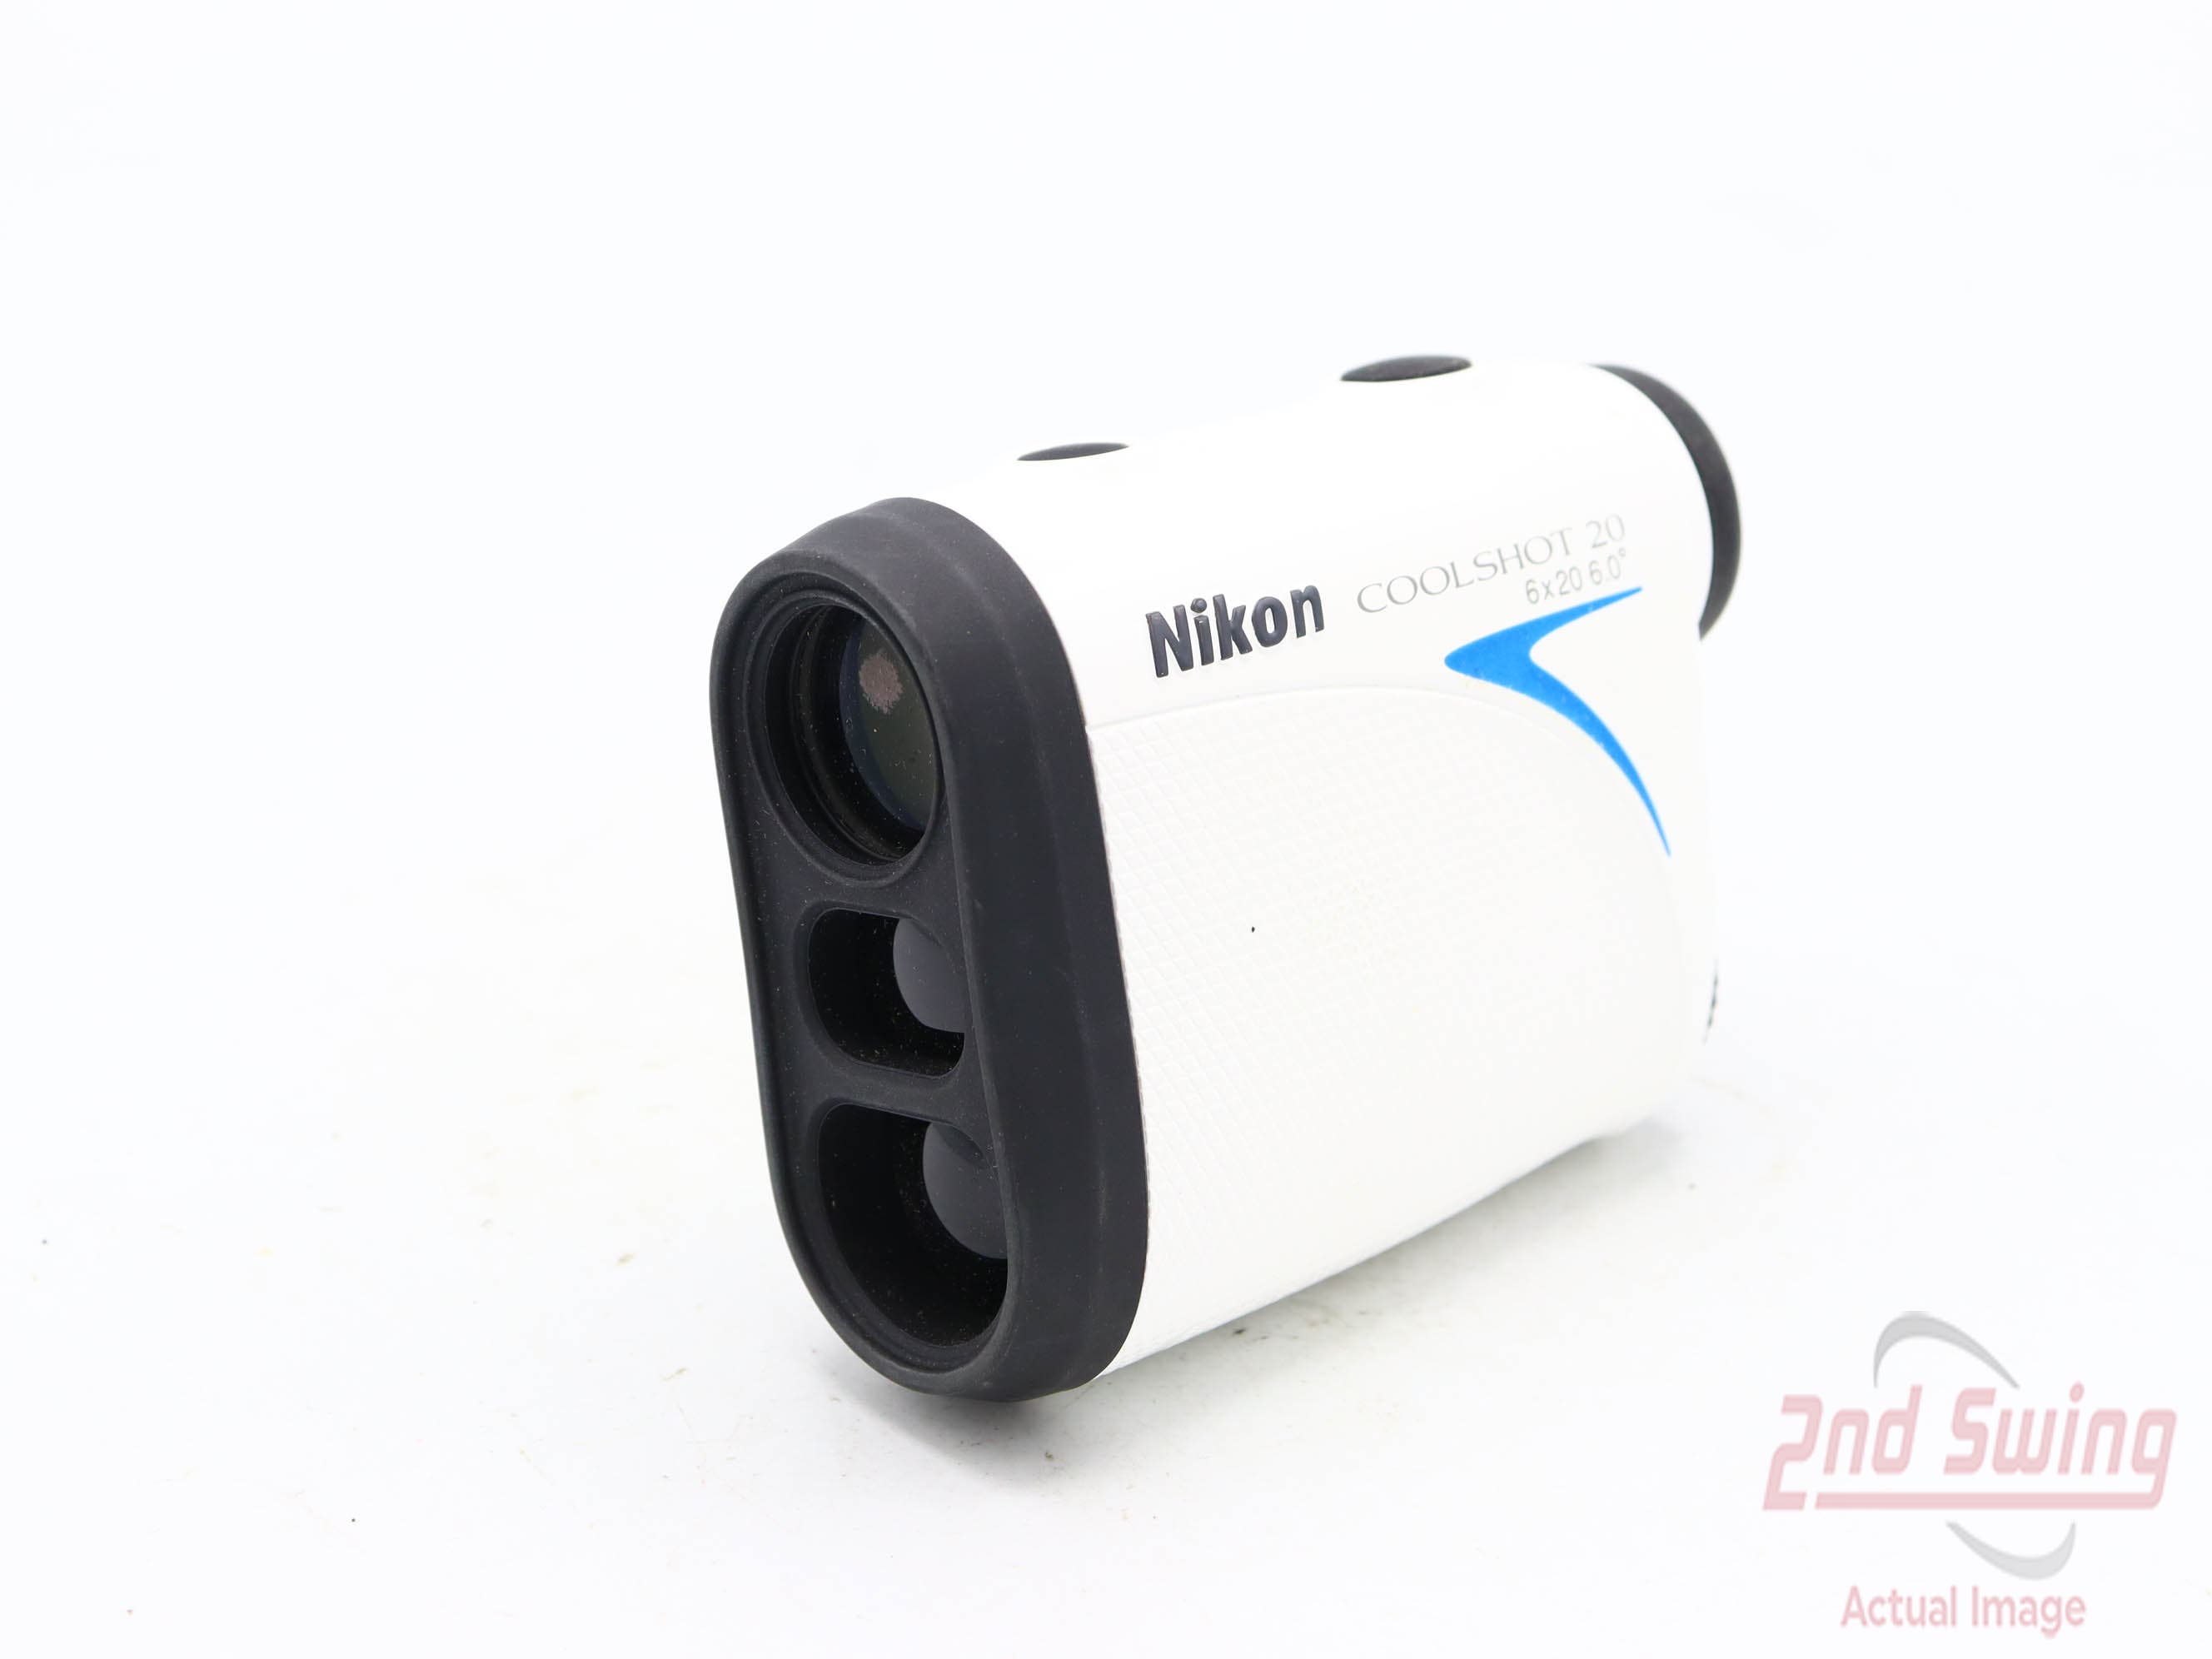 Nikon Coolshot 20 Golf GPS & Rangefinders (D-82332876413) | 2nd